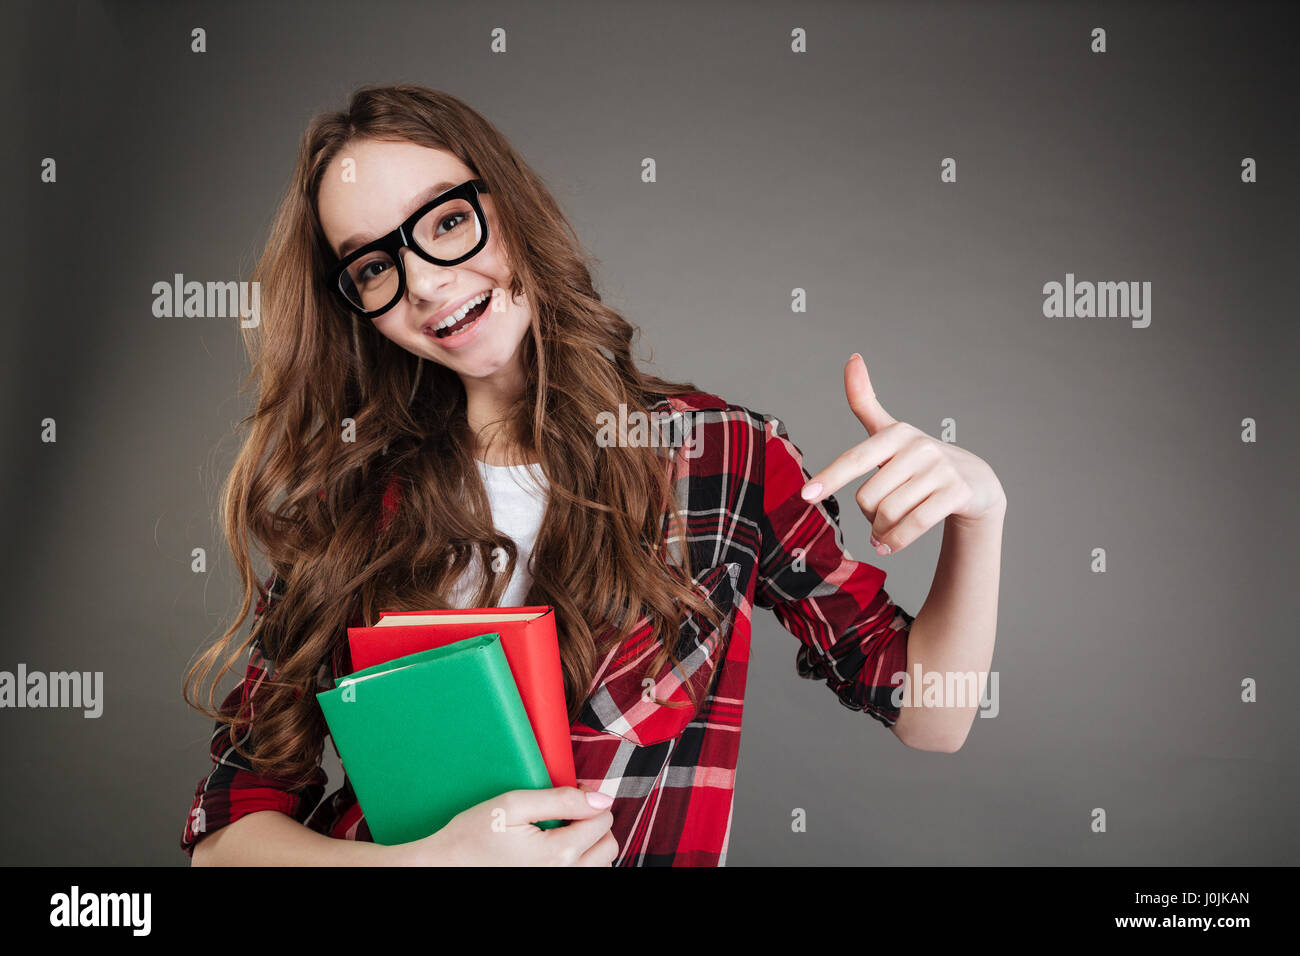 Foto der hübsche junge Frau mit Brille posiert isoliert auf grauem Hintergrund Bücher in Händen hält, und zeigt. Blick in die Kamera. Stockfoto